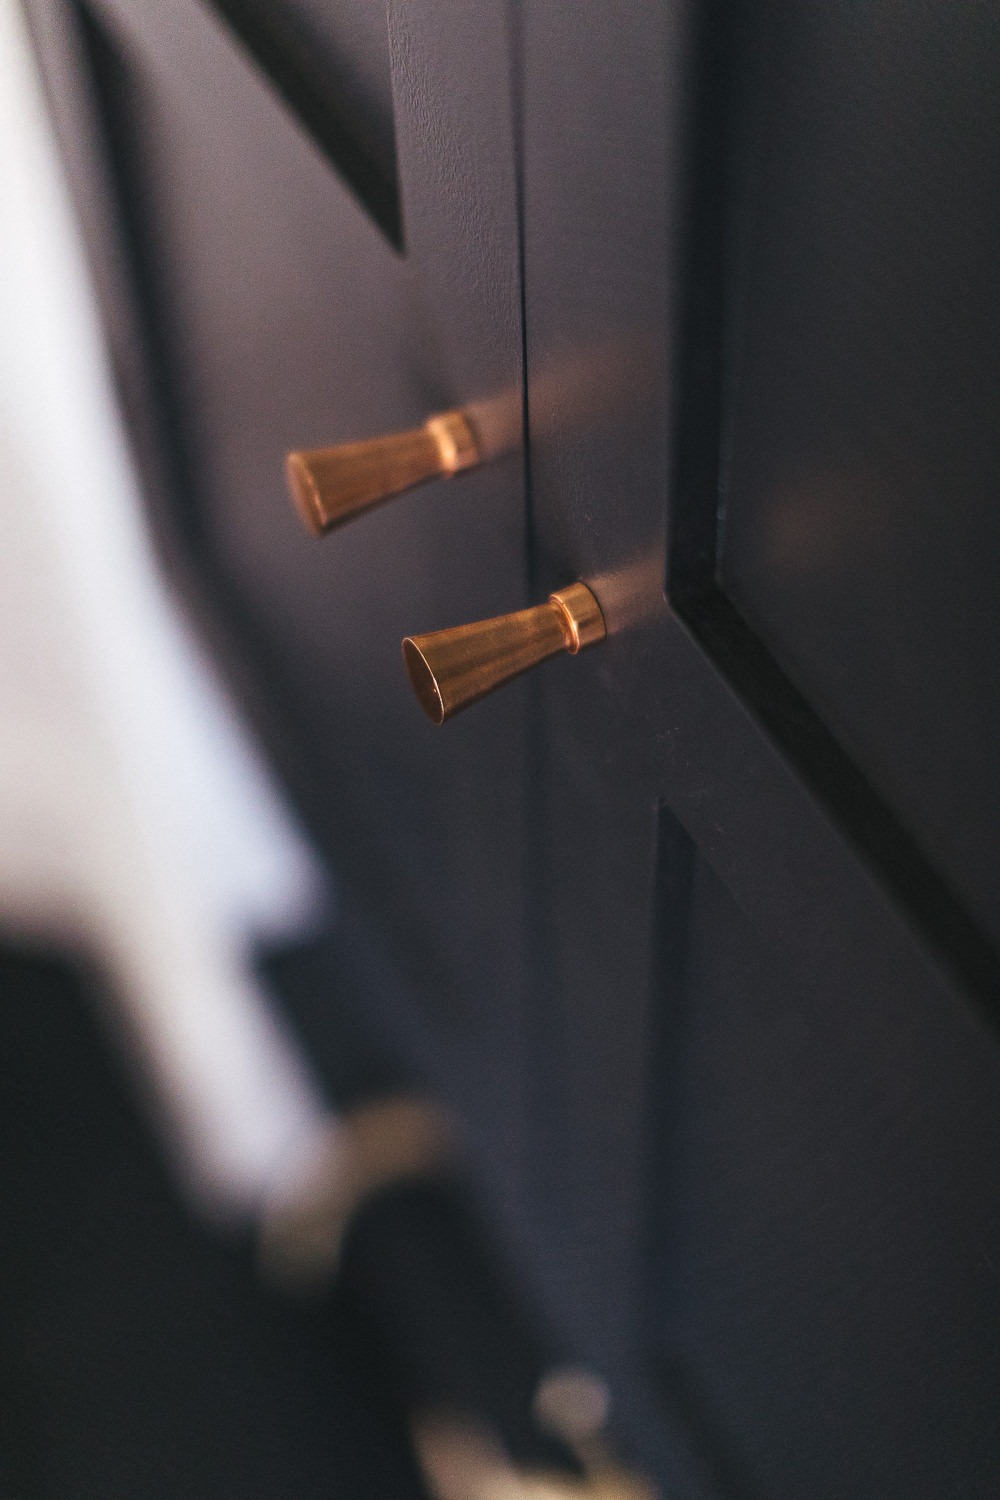 Copper door knobs from Oliver Bonas